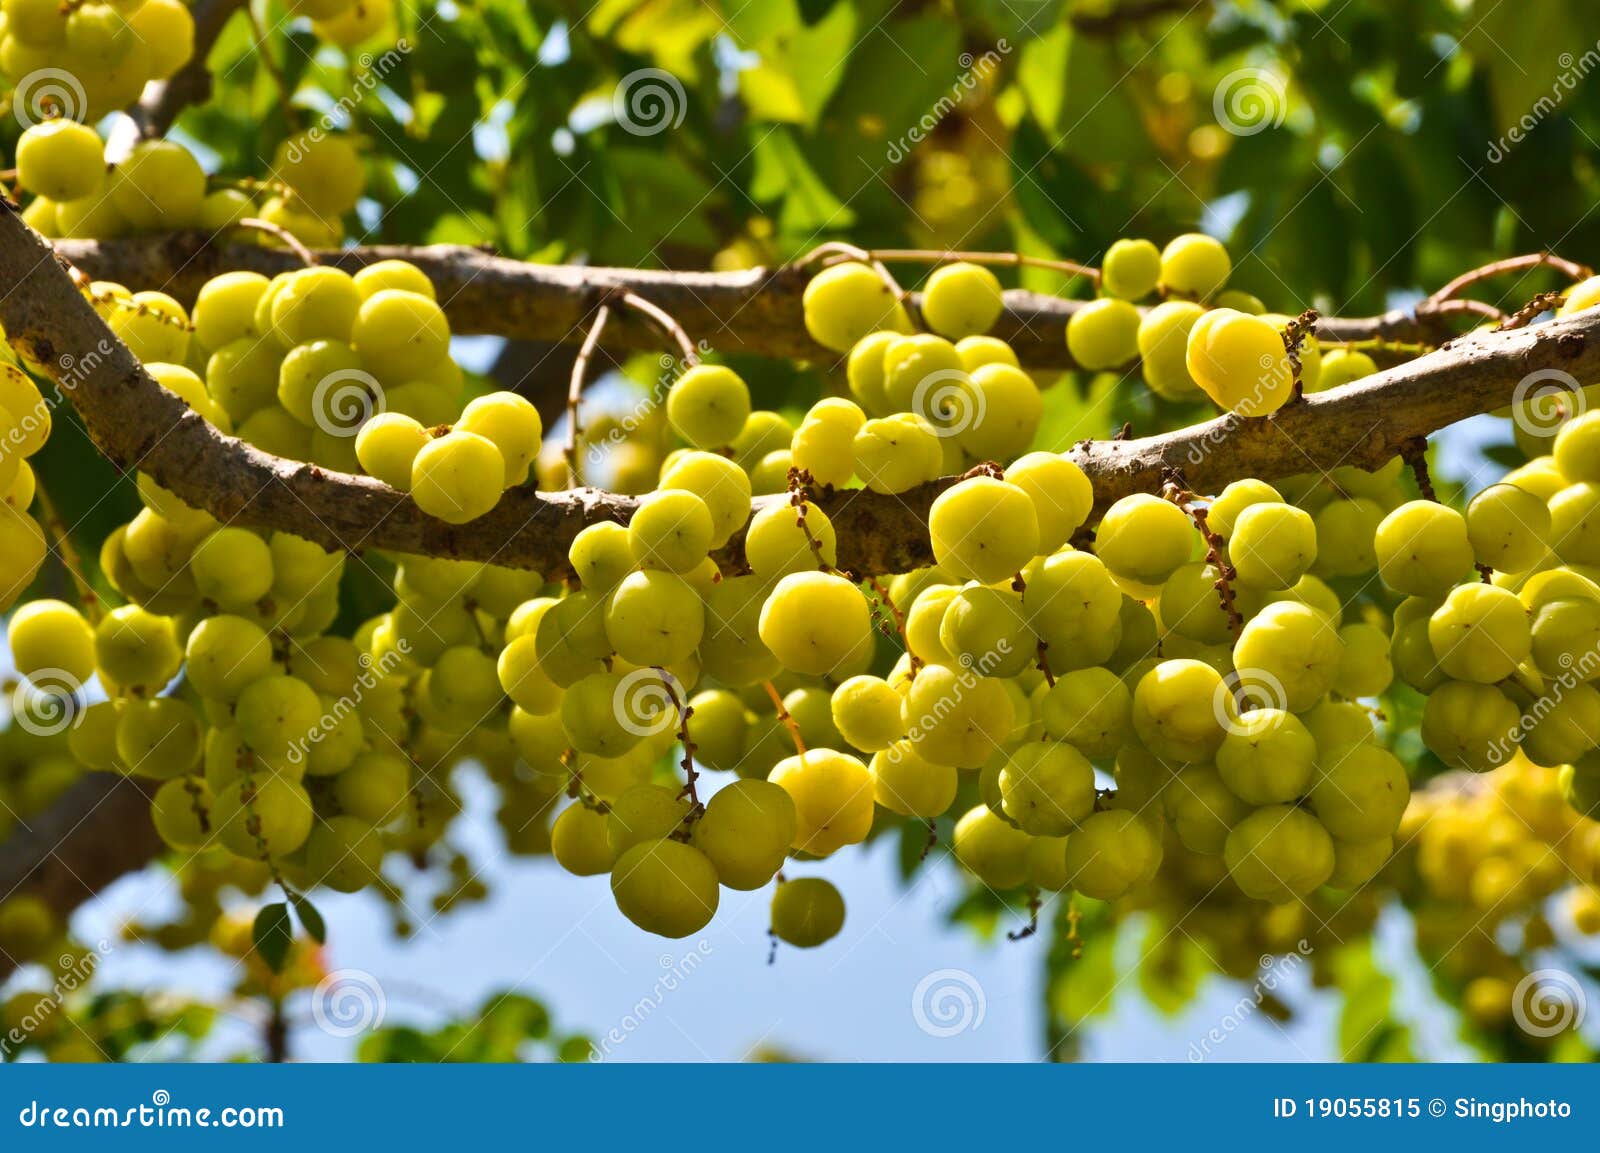 黄色鹅莓 库存图片. 图片 包括有 新鲜, 发狂, 果子, 黄色, 没人, 绿色, 夏天, 庭院, 鹅莓 - 52840087